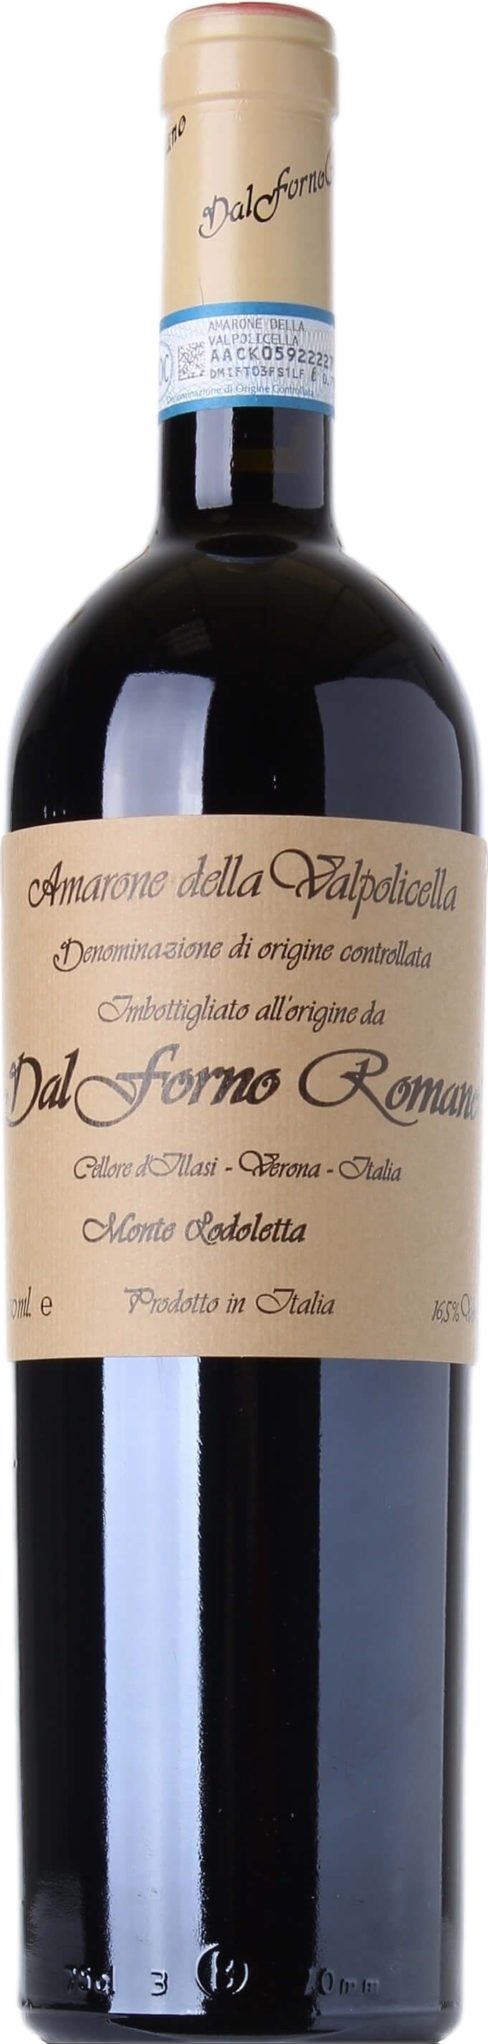 One for günstig Kaufen-Dal Forno Romano Amarone della Valpolicella Monte Lodoletta 2017. Dal Forno Romano Amarone della Valpolicella Monte Lodoletta 2017 . 